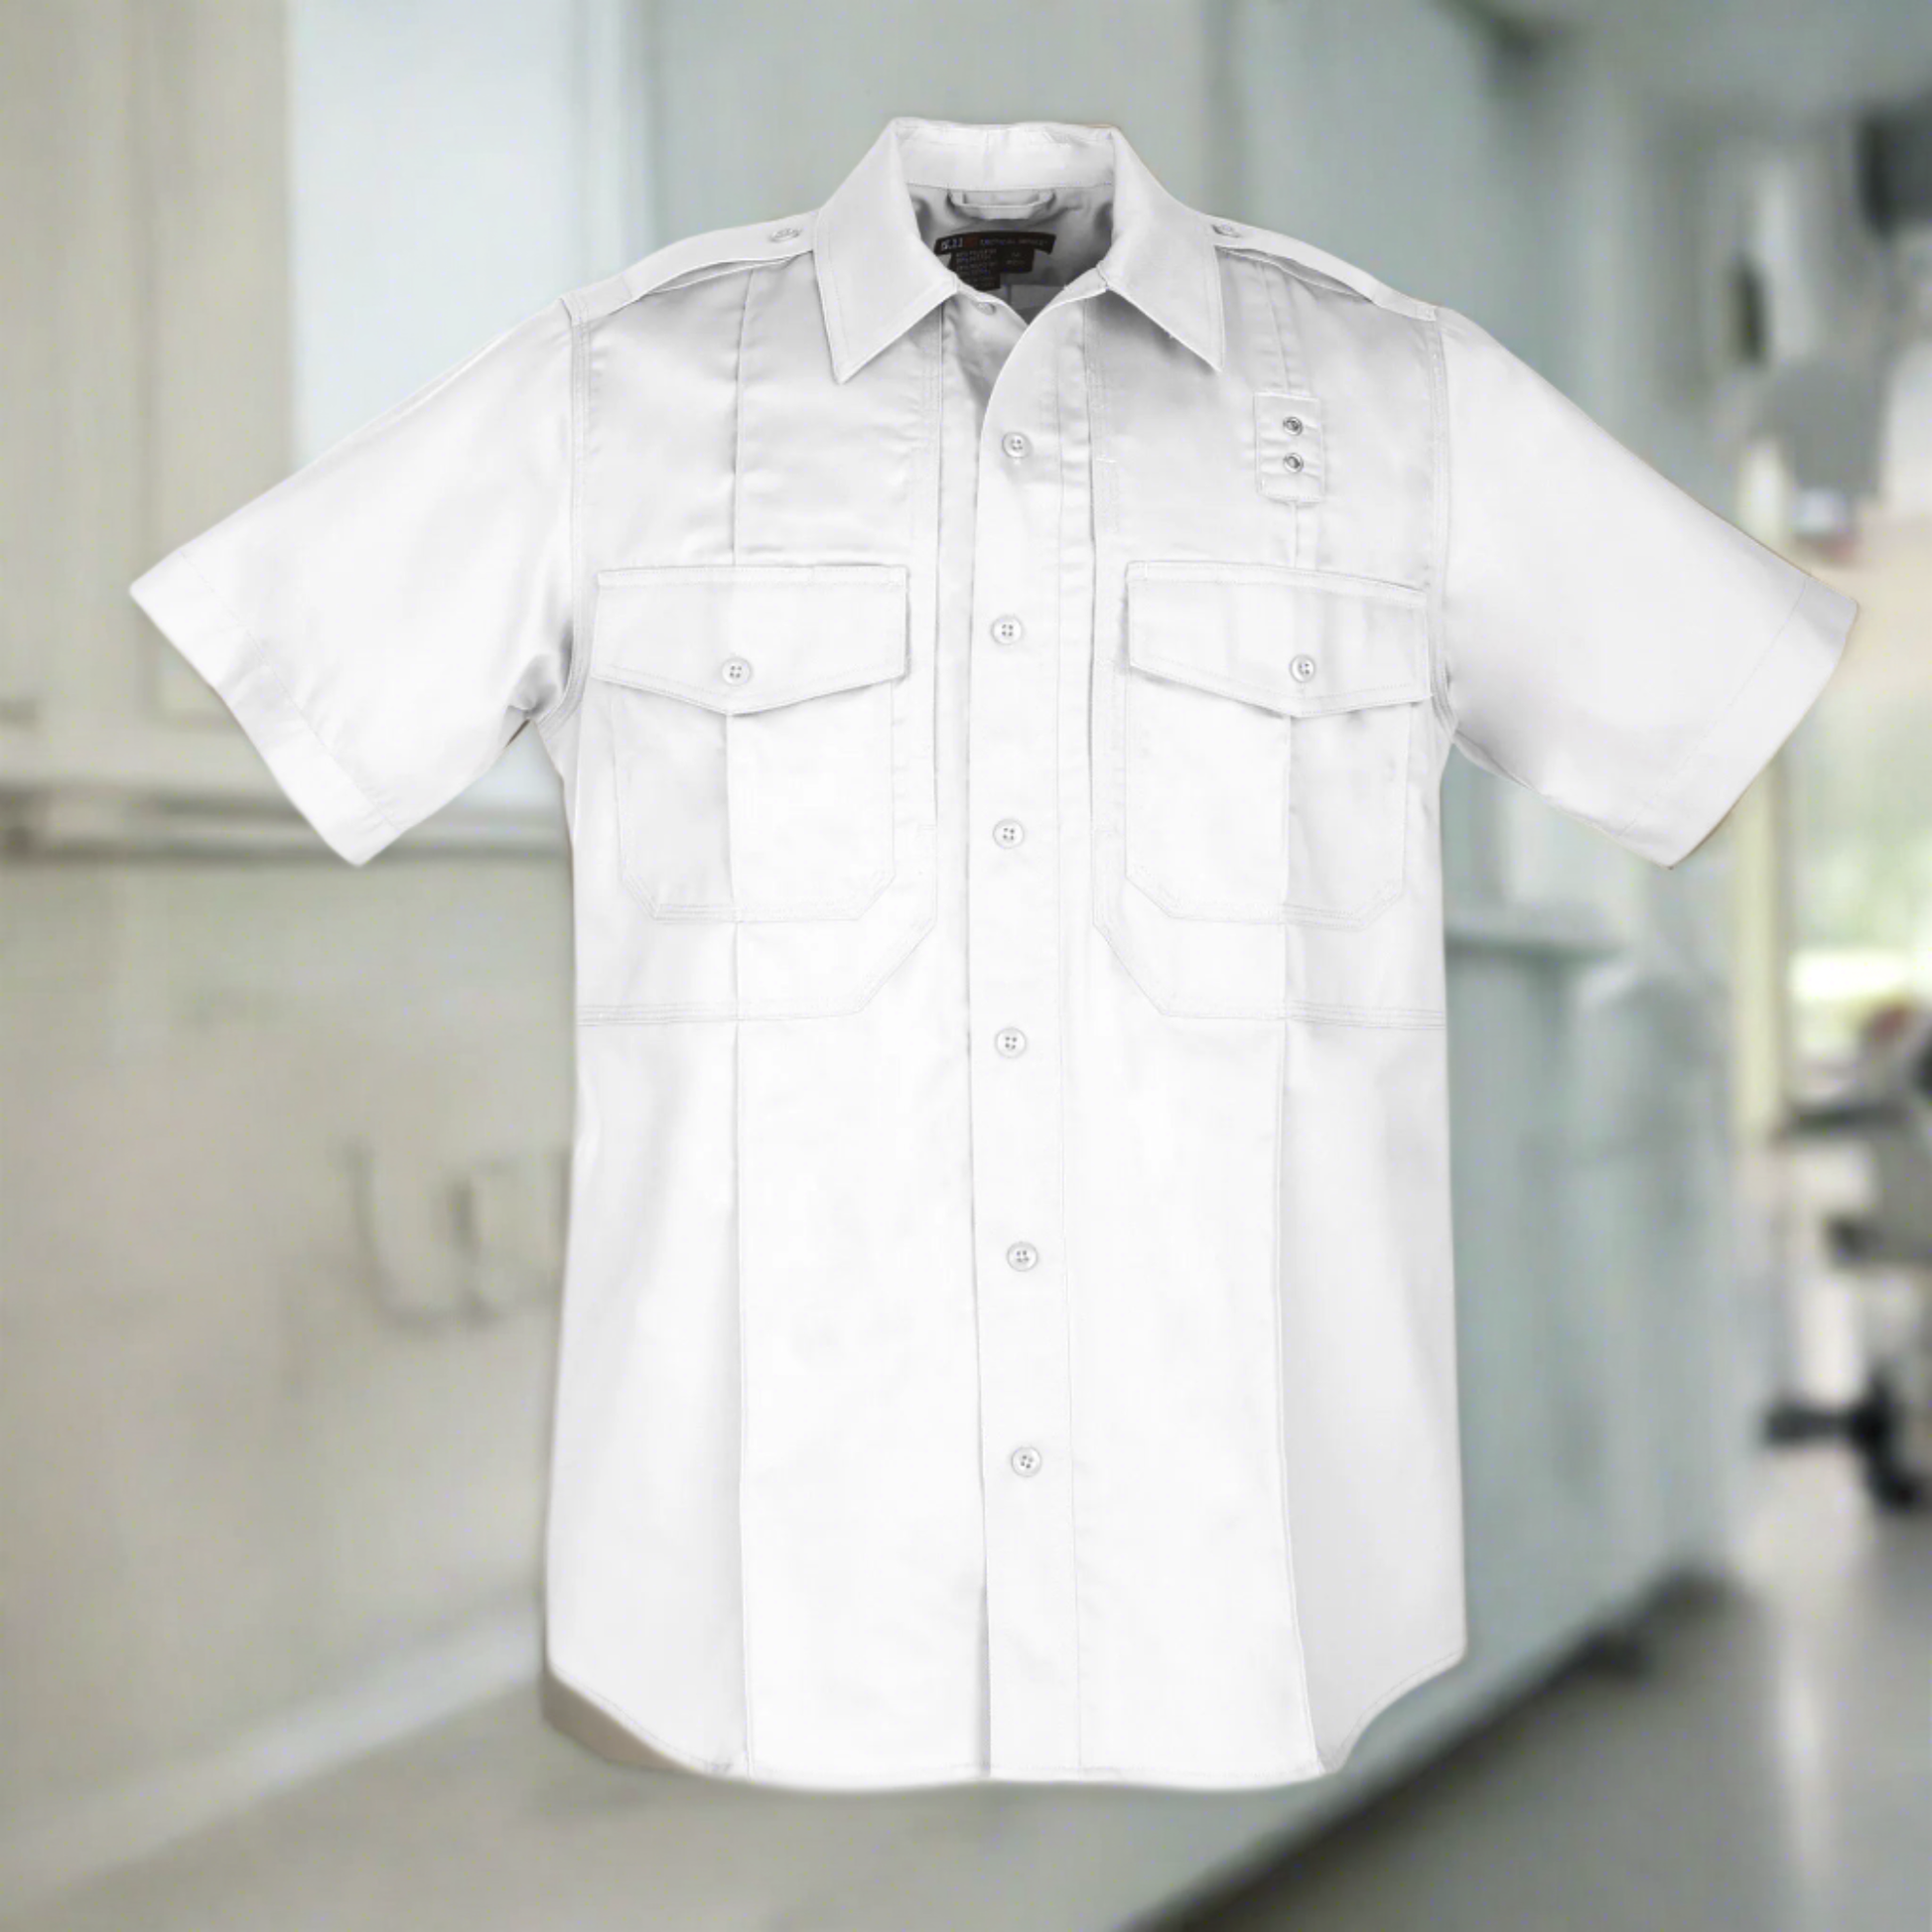 Tops - 5.11 Tactical TWILL PDU Class B Short Sleeve Shirt